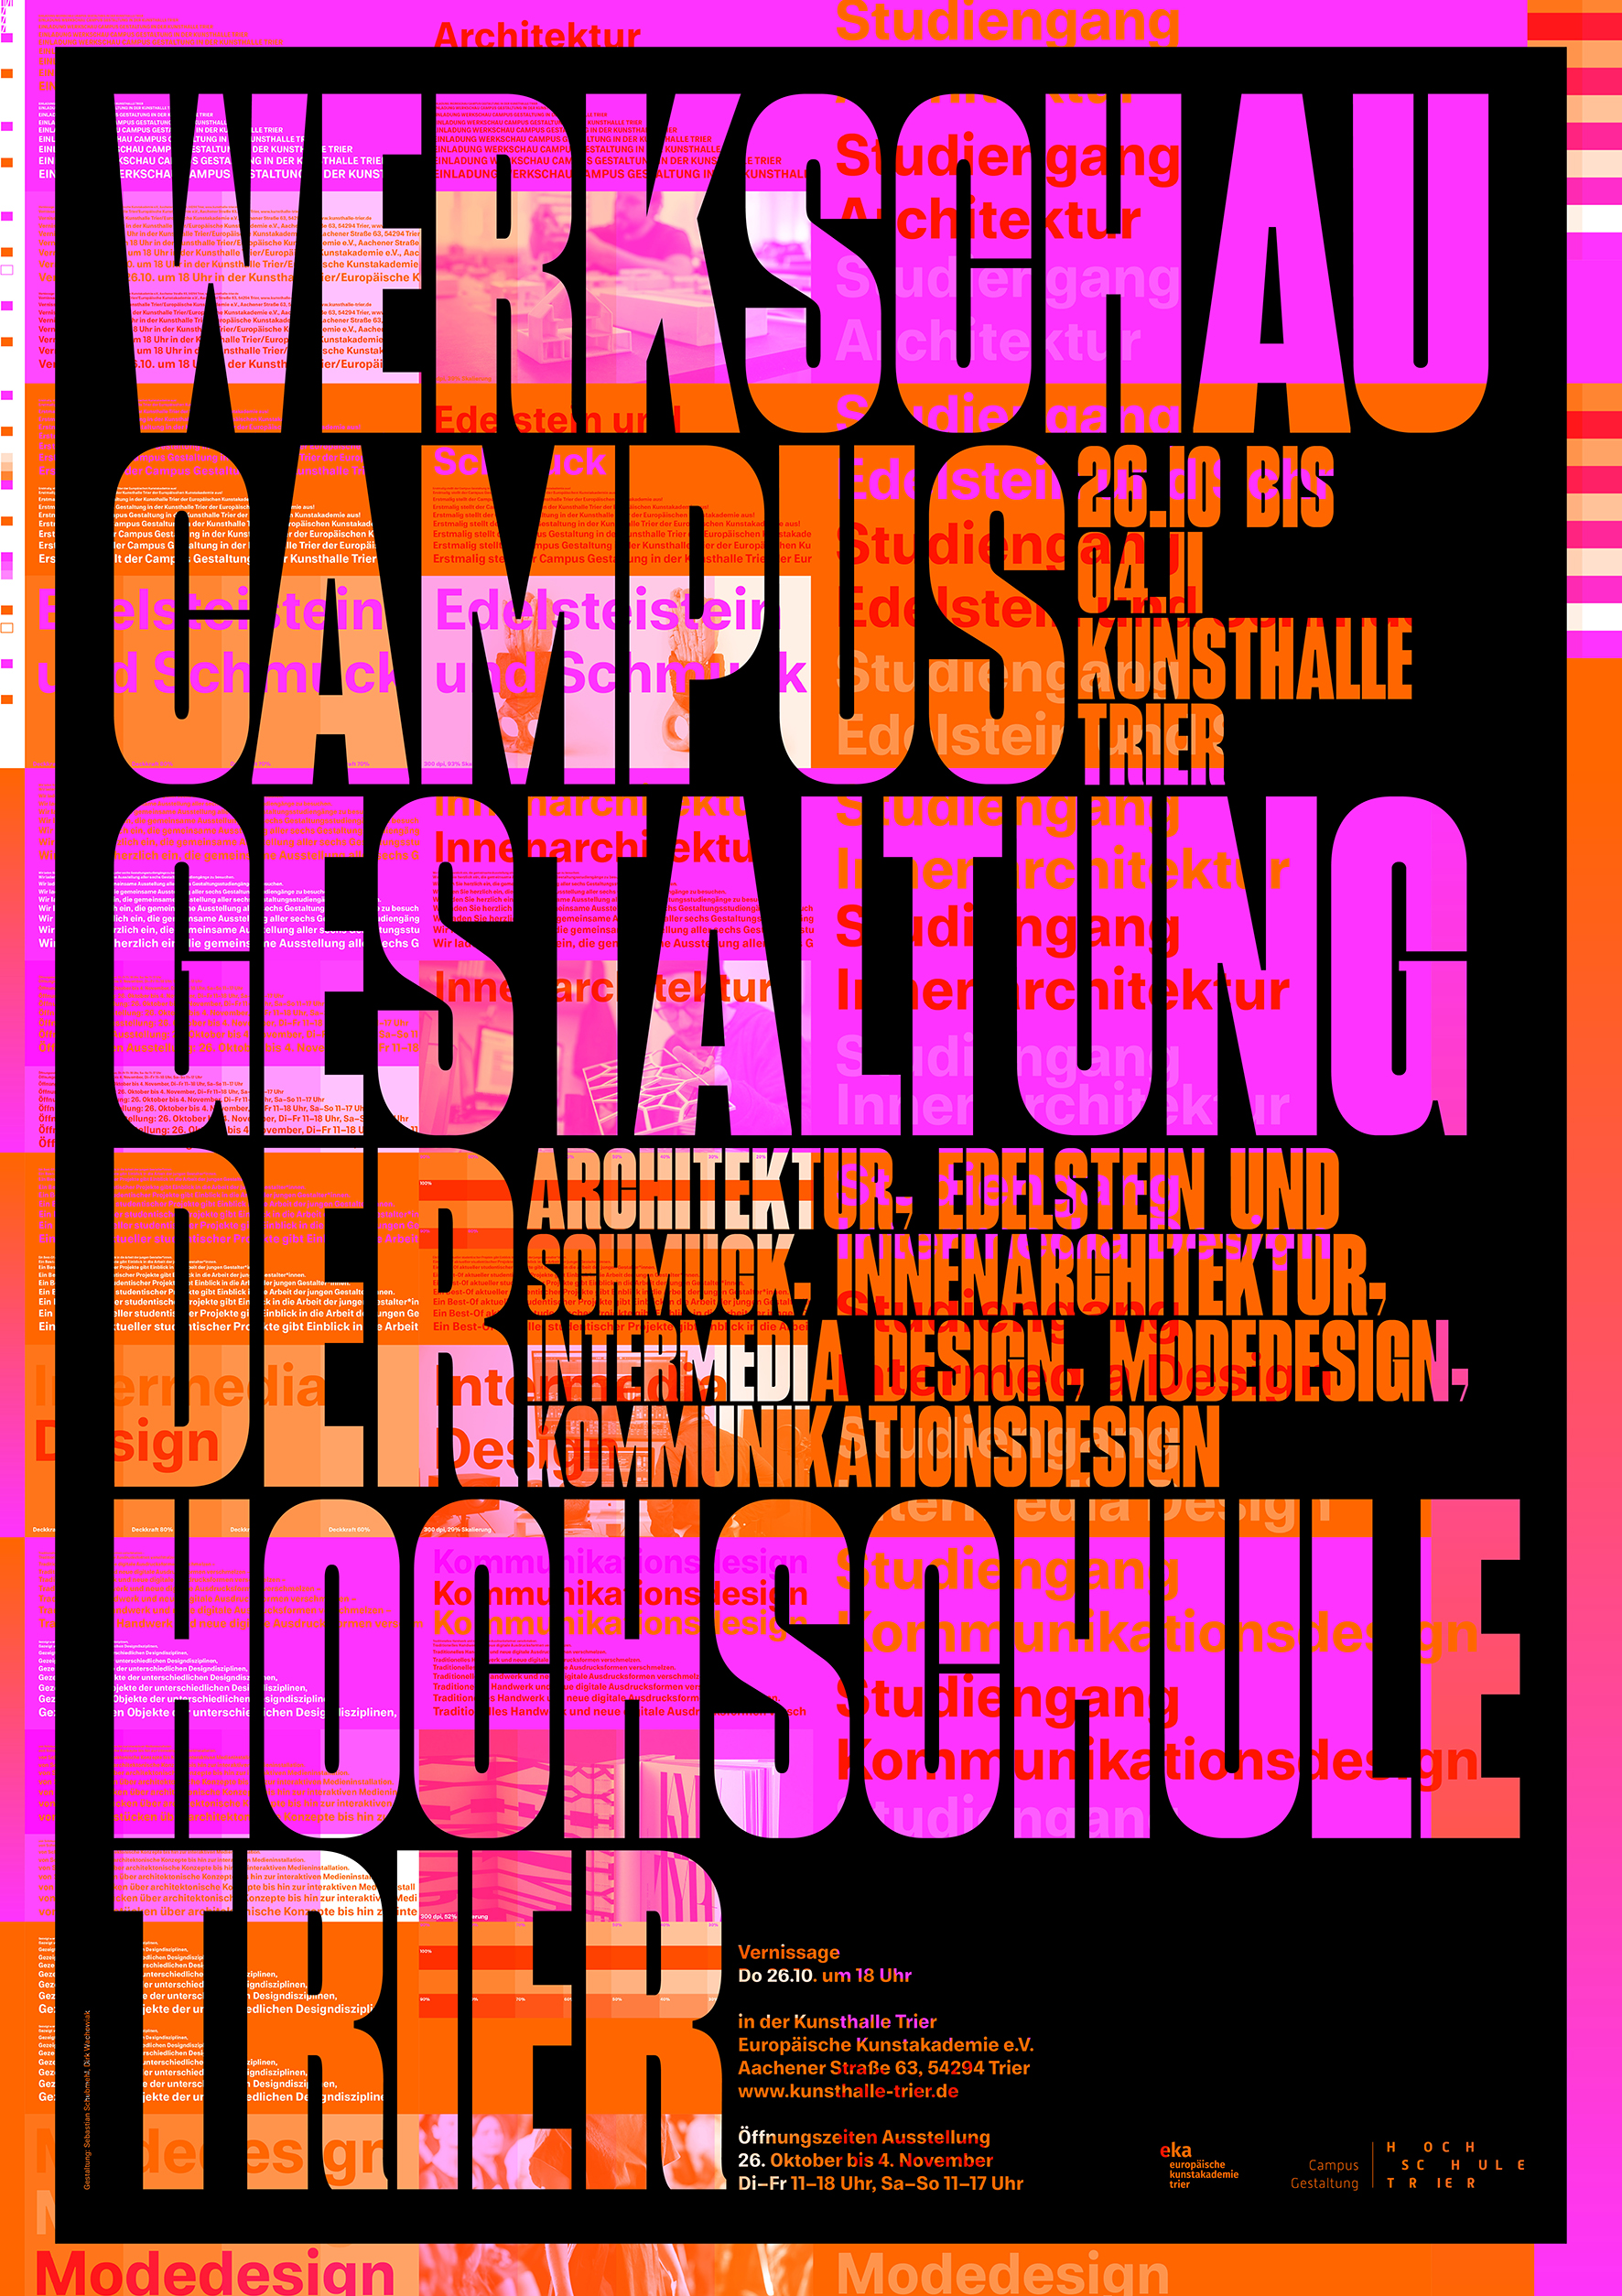 Werkschau Campus Gestaltung der Hochschule Trier (2)